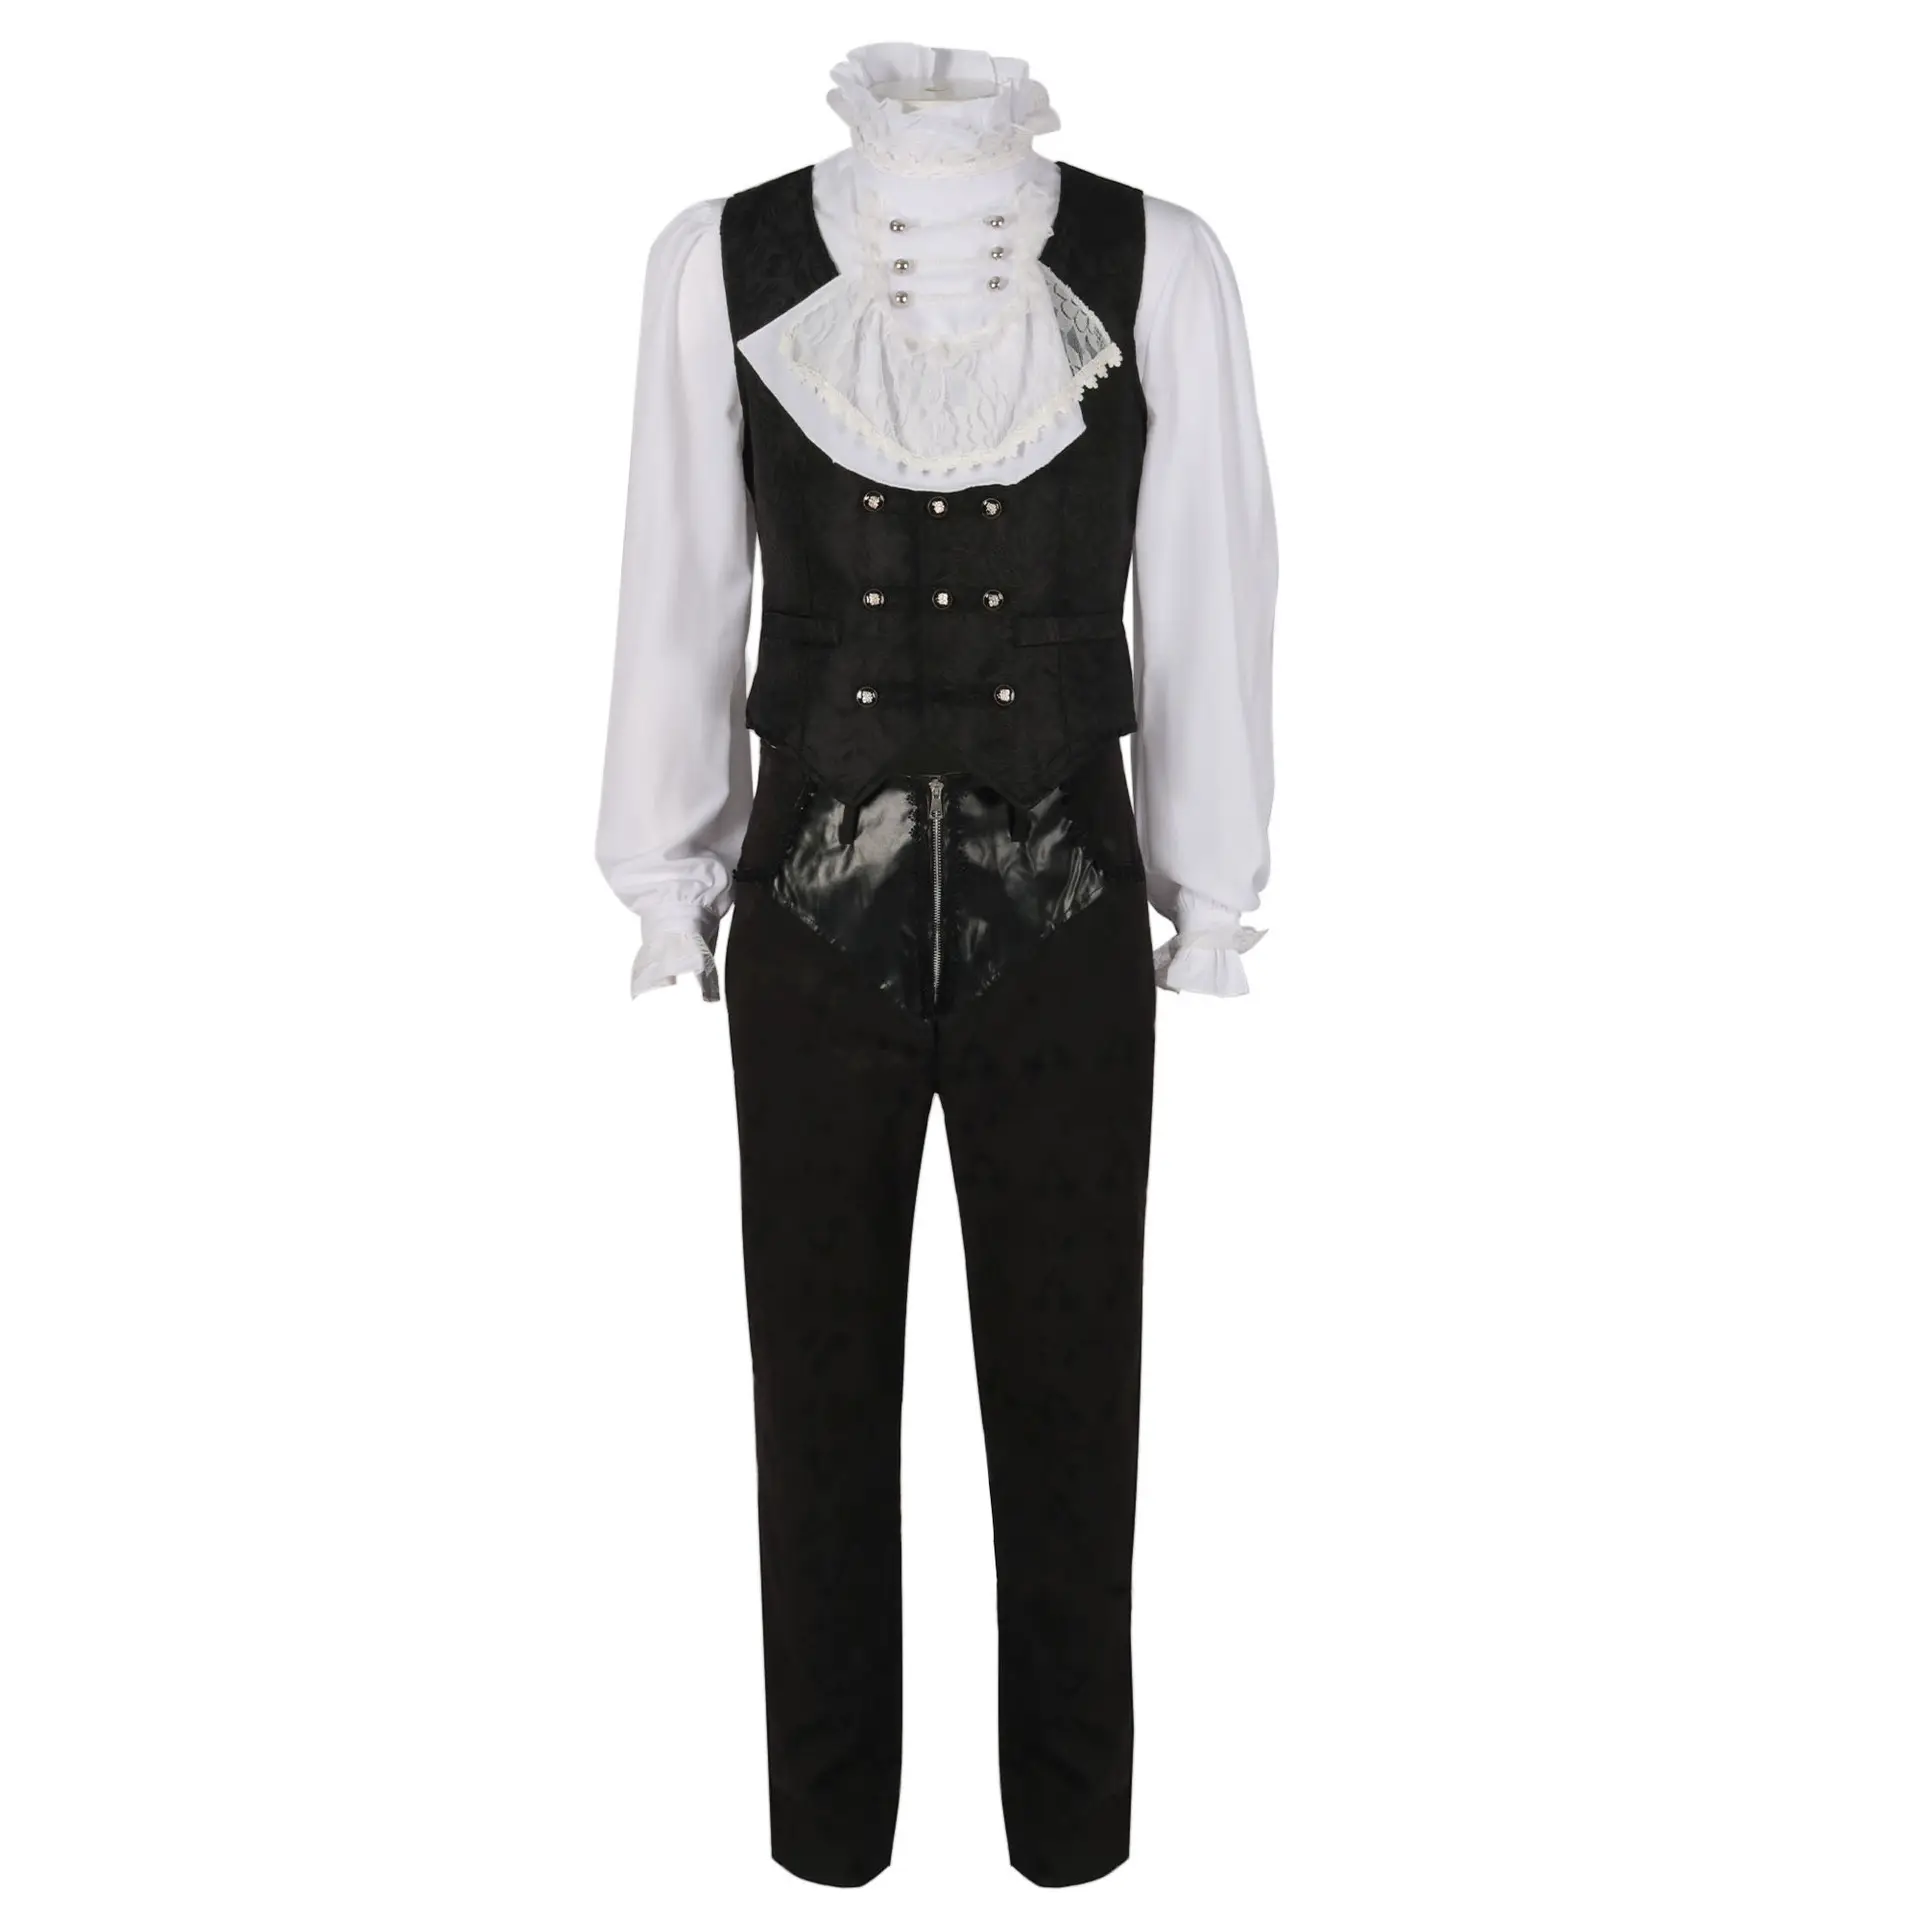 Herren Steampunk Renaissance Prinz Charmant Cosplay Outfit gotisch mittelalterlich viktorianisch edwardianisch Hemd Weste Hosen Frottee Kostüm